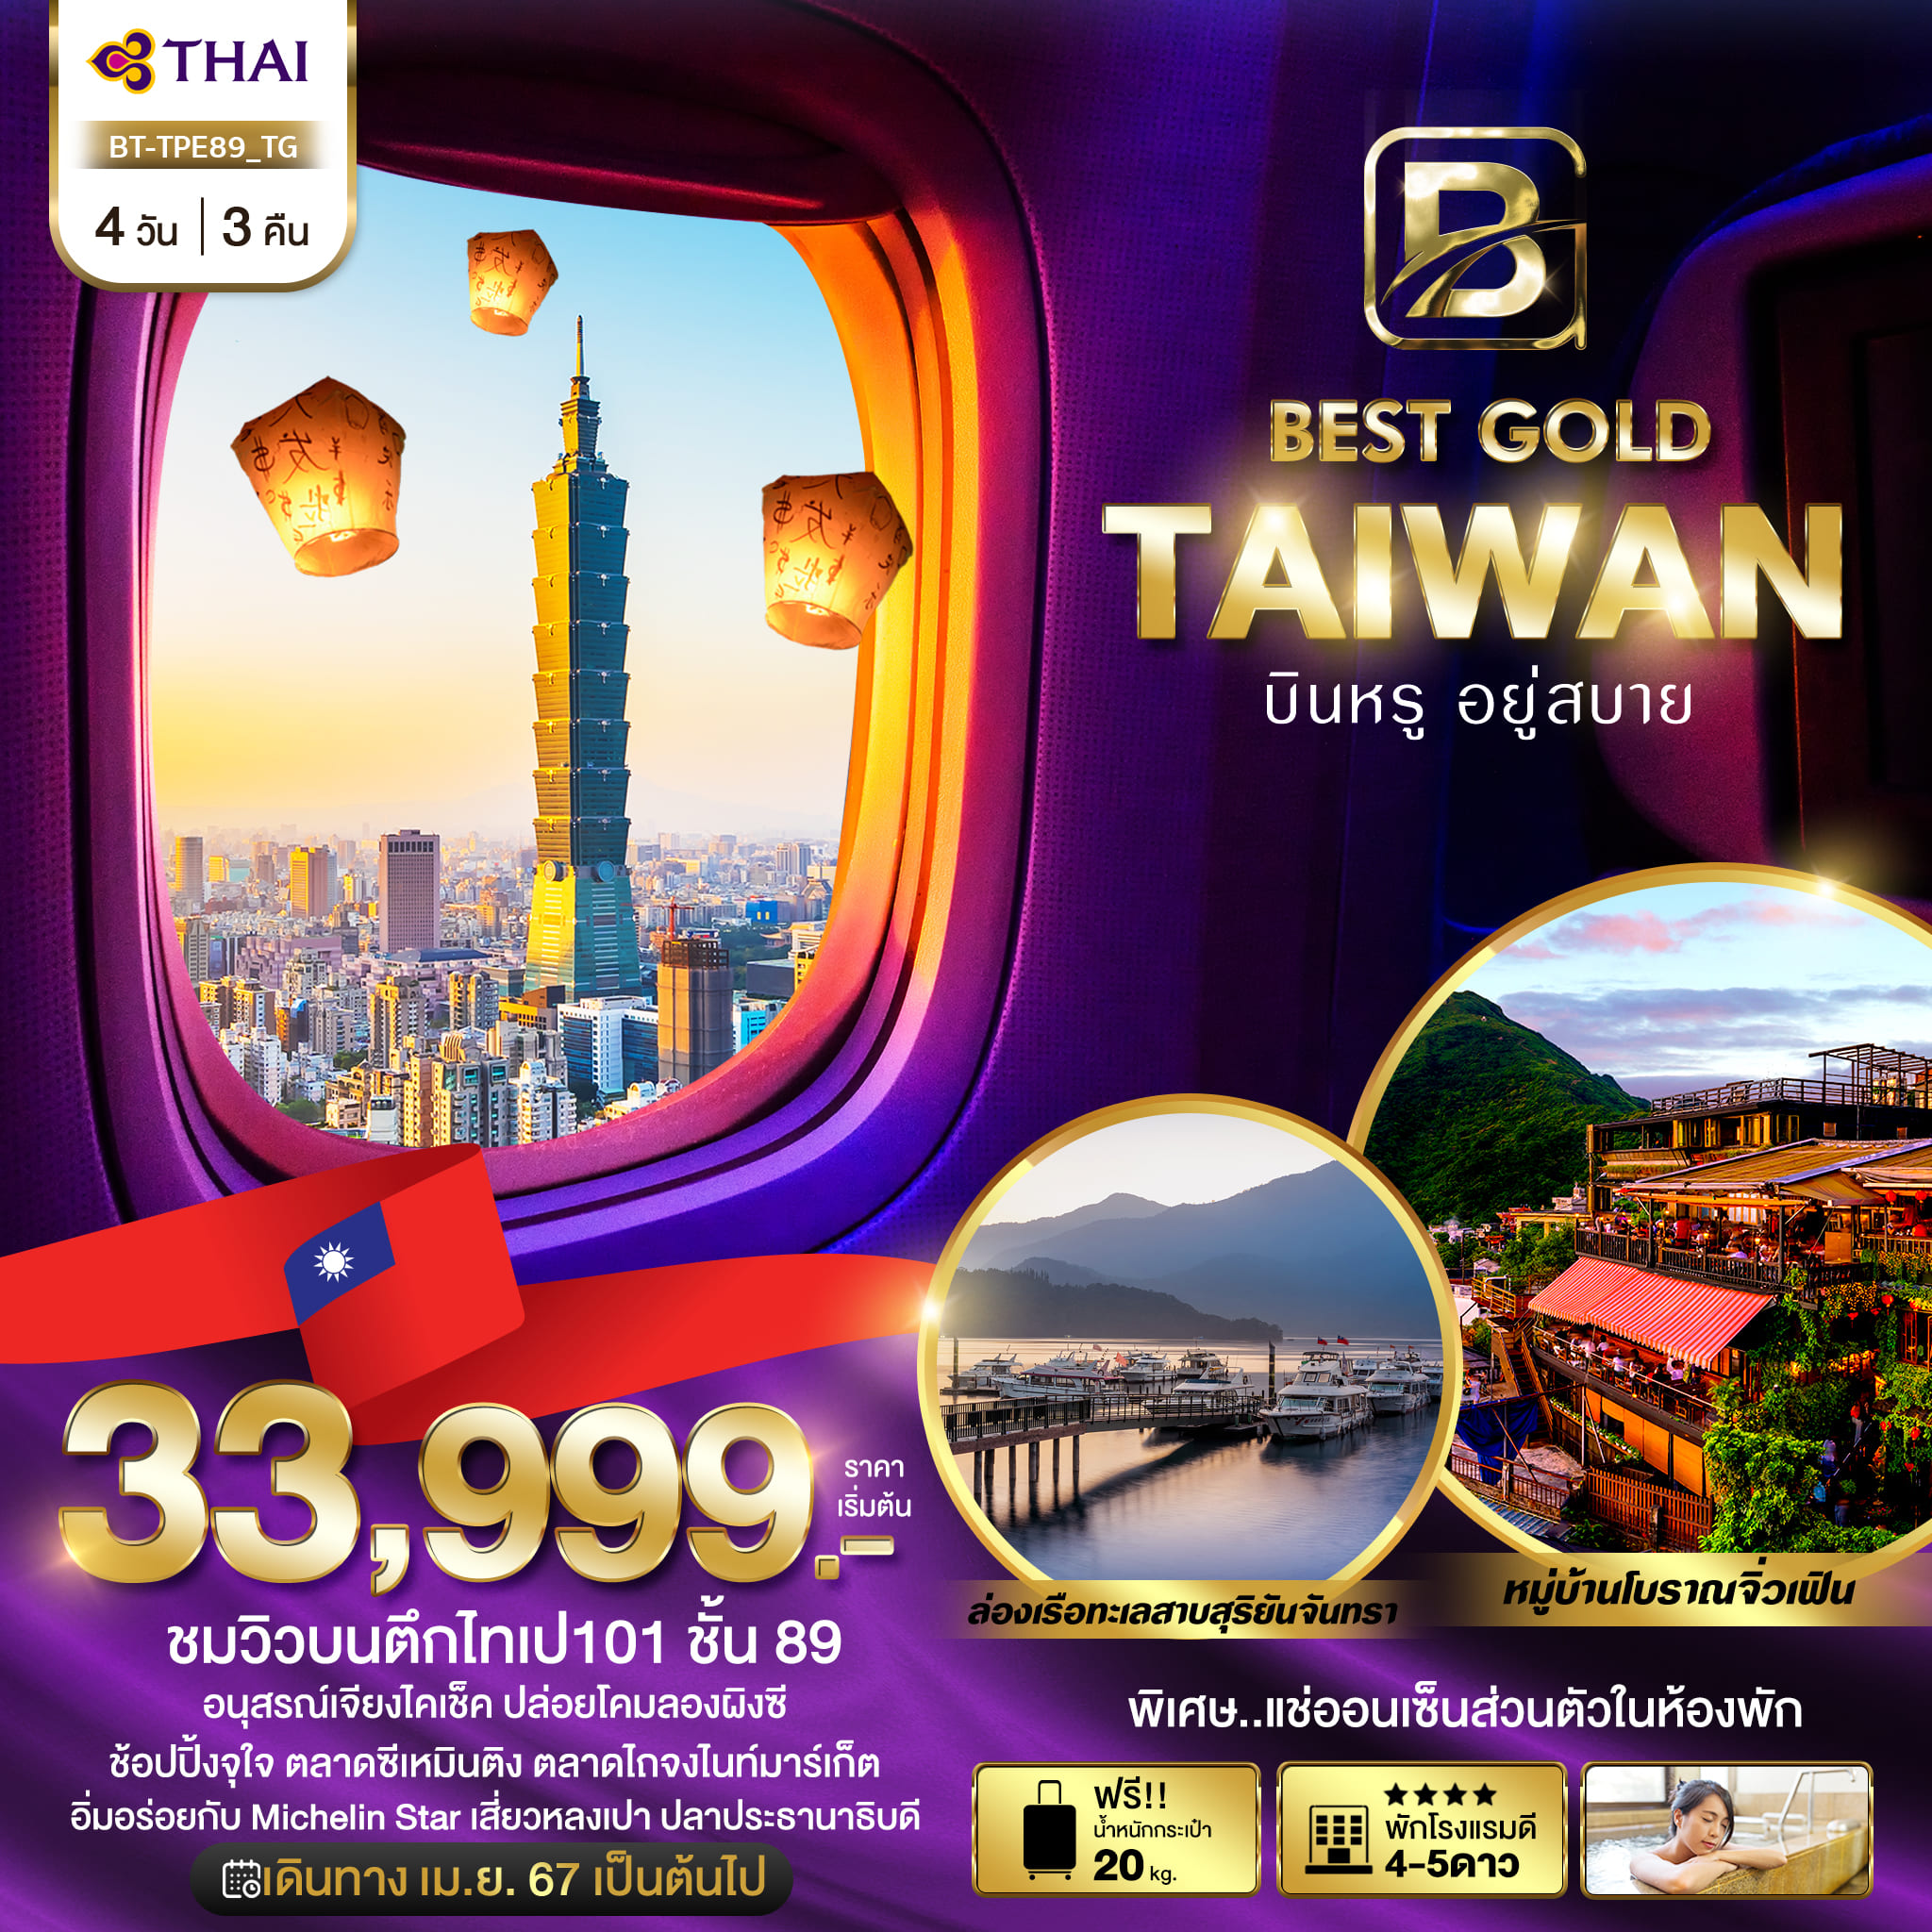 ทัวร์ไต้หวัน มหัศจรรย์ BEST GOLD TAIWAN บินหรู อยู่สบาย 4วัน 3คืน (TG)